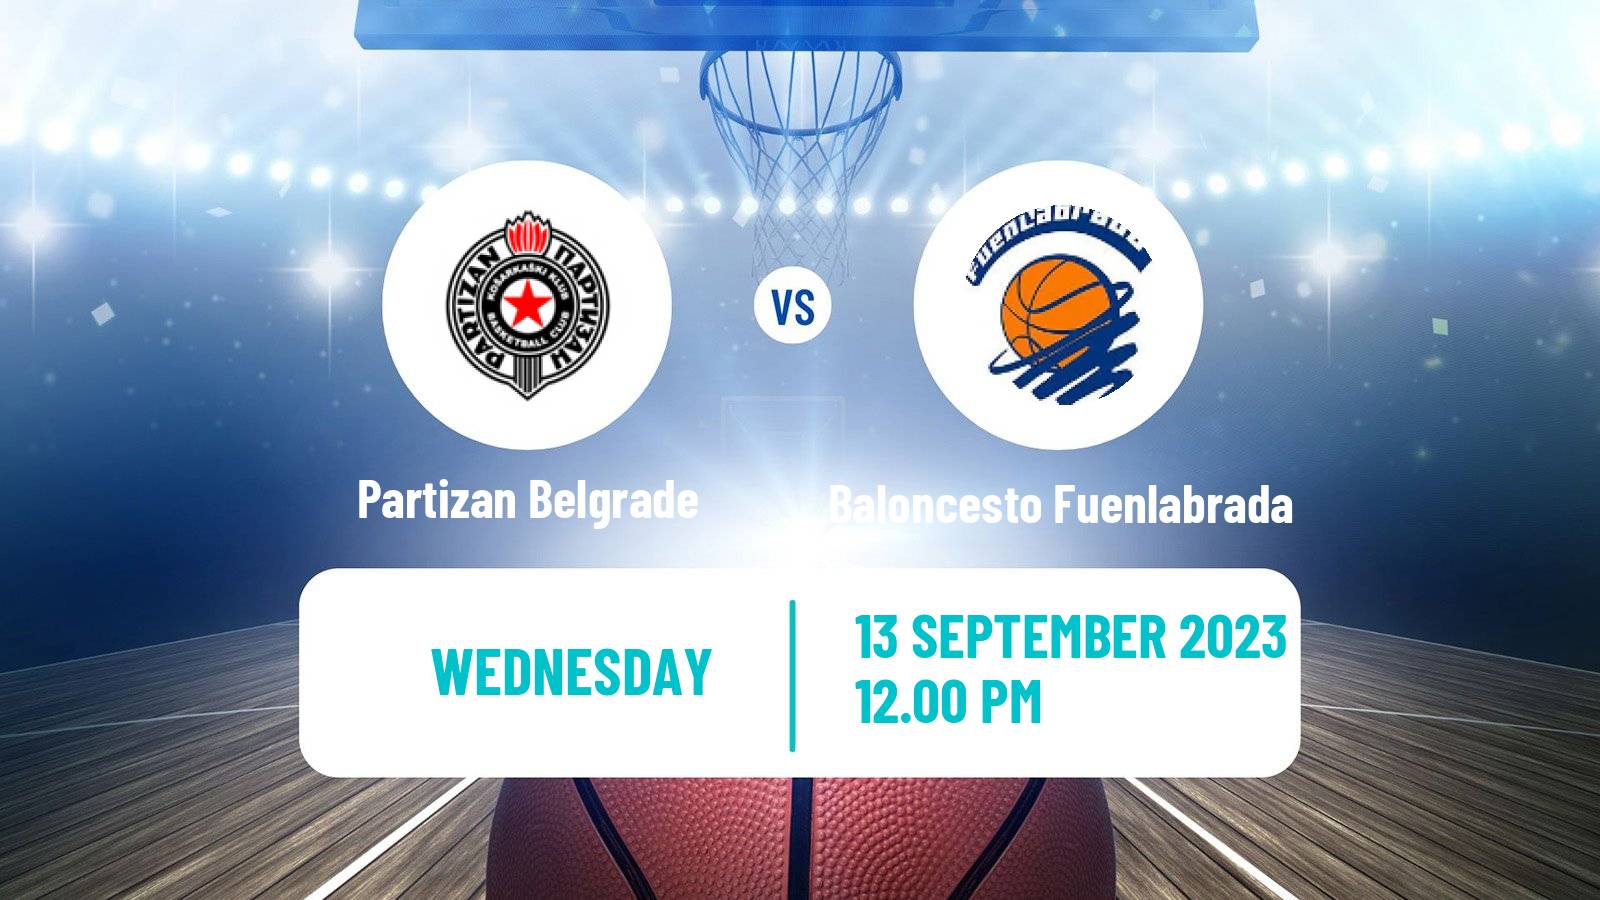 Basketball Club Friendly Basketball Partizan Belgrade - Baloncesto Fuenlabrada